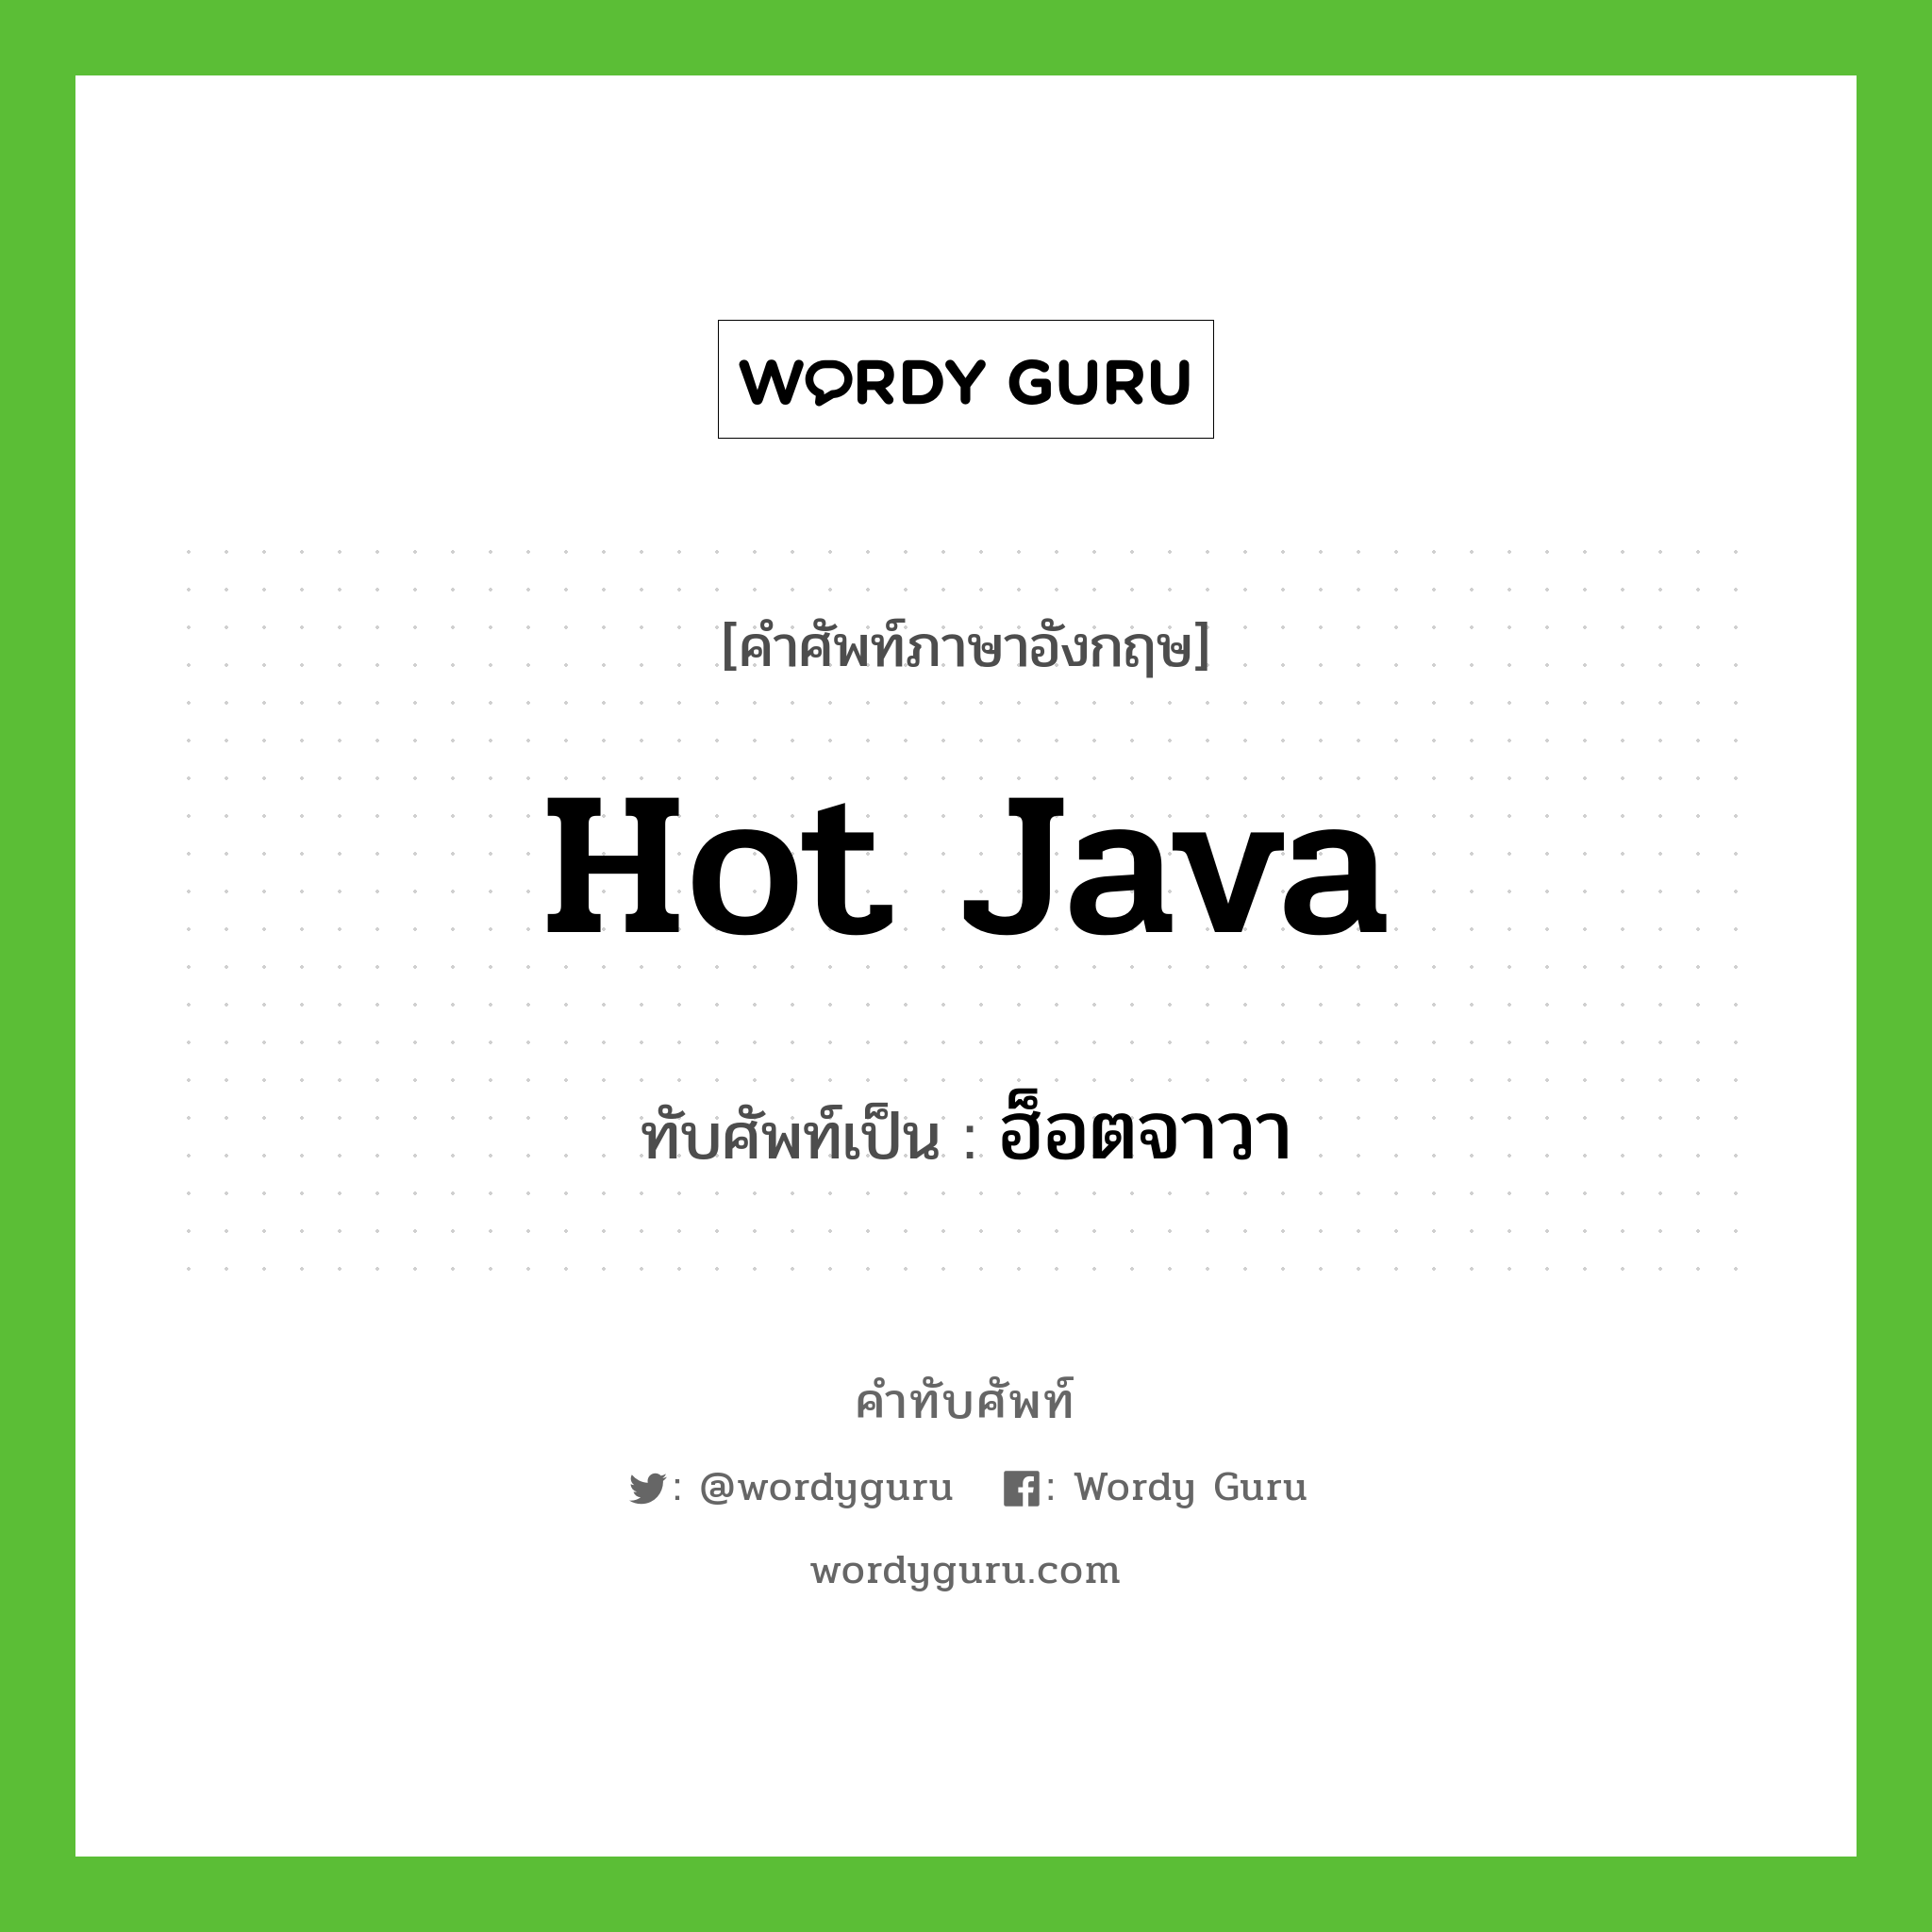 Hot Java เขียนเป็นคำไทยว่าอะไร?, คำศัพท์ภาษาอังกฤษ Hot Java ทับศัพท์เป็น ฮ็อตจาวา